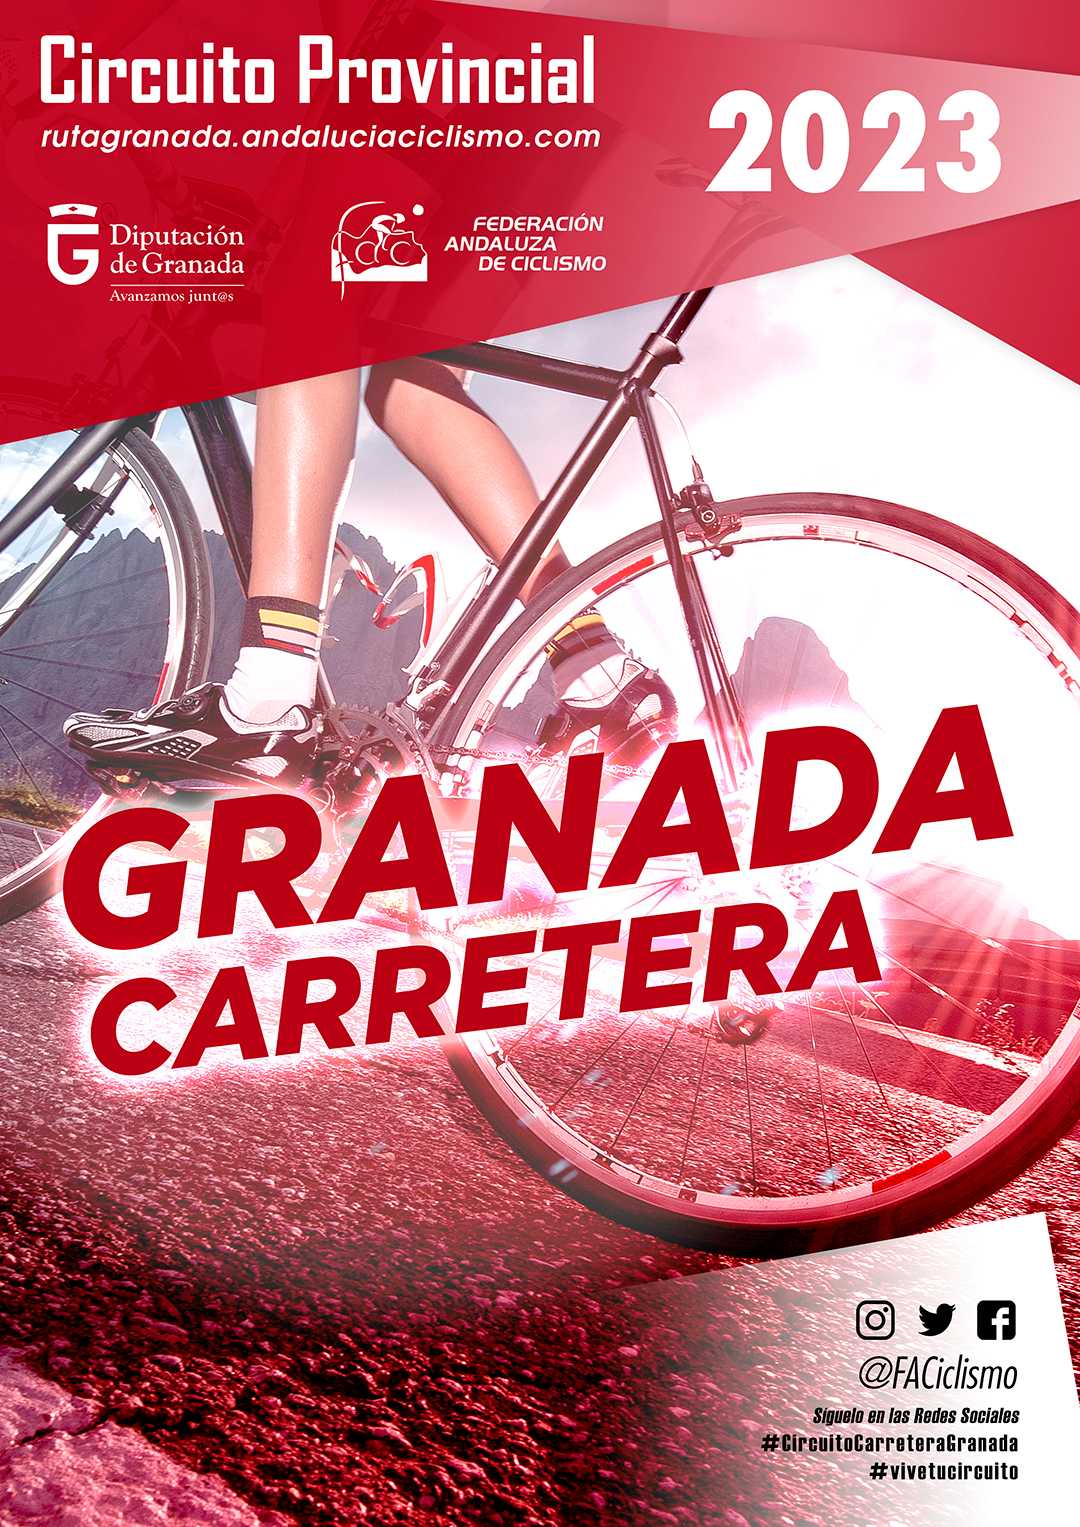 La crono hasta Pico del Conjuro abre el Circuito Provincial de Granada Carretera 2023